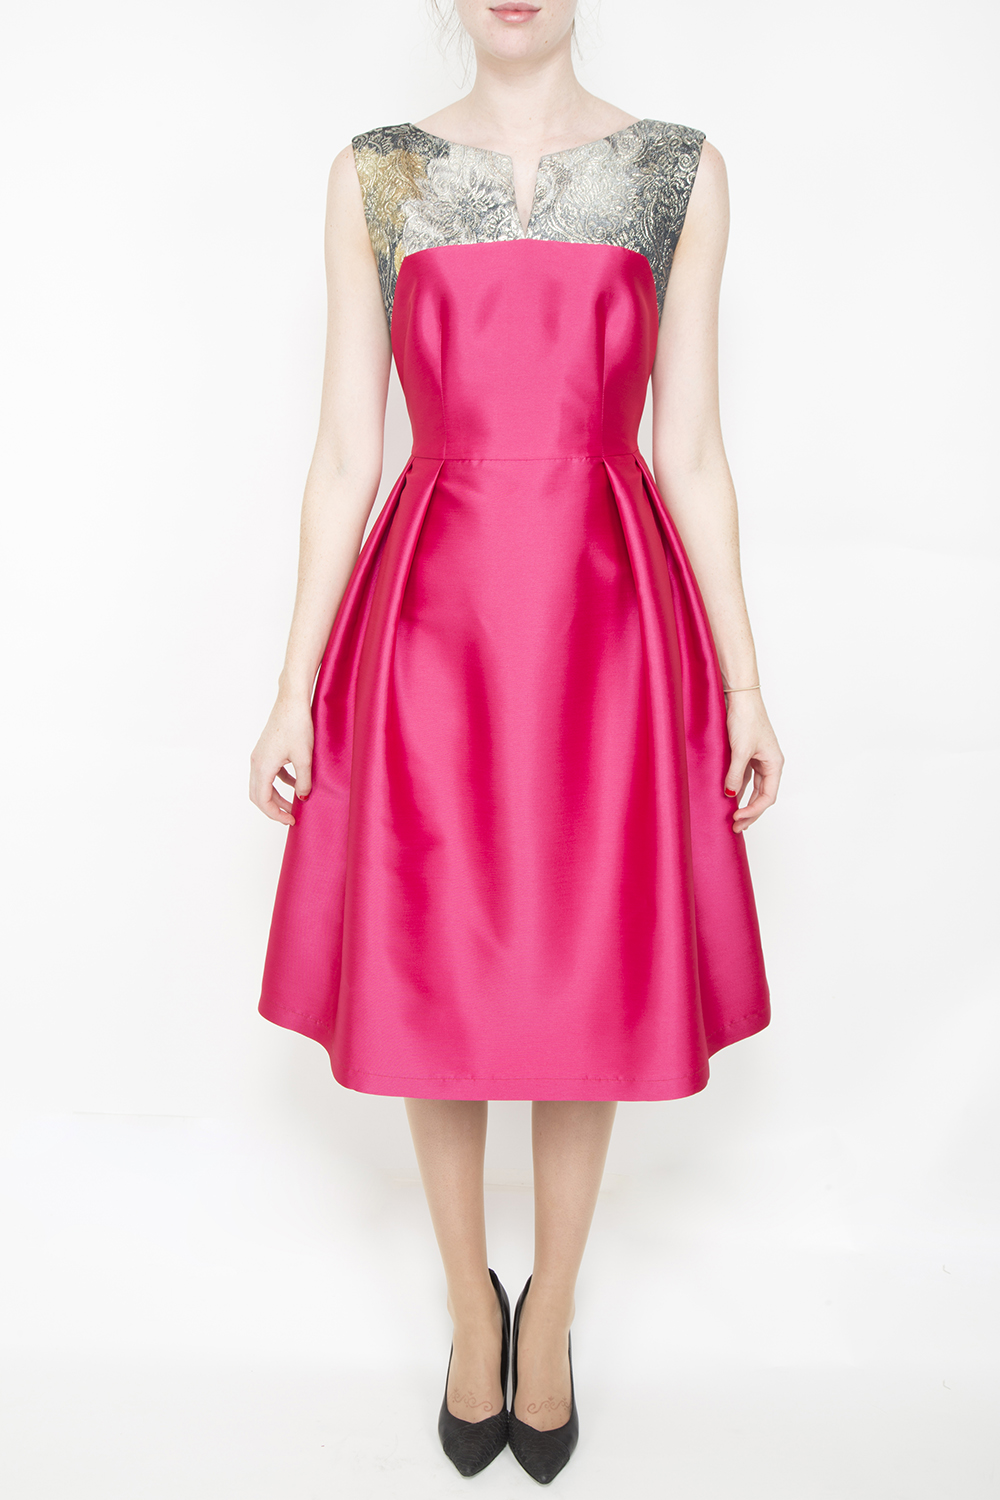 Caroline Kilkenny Pink full skirt dress